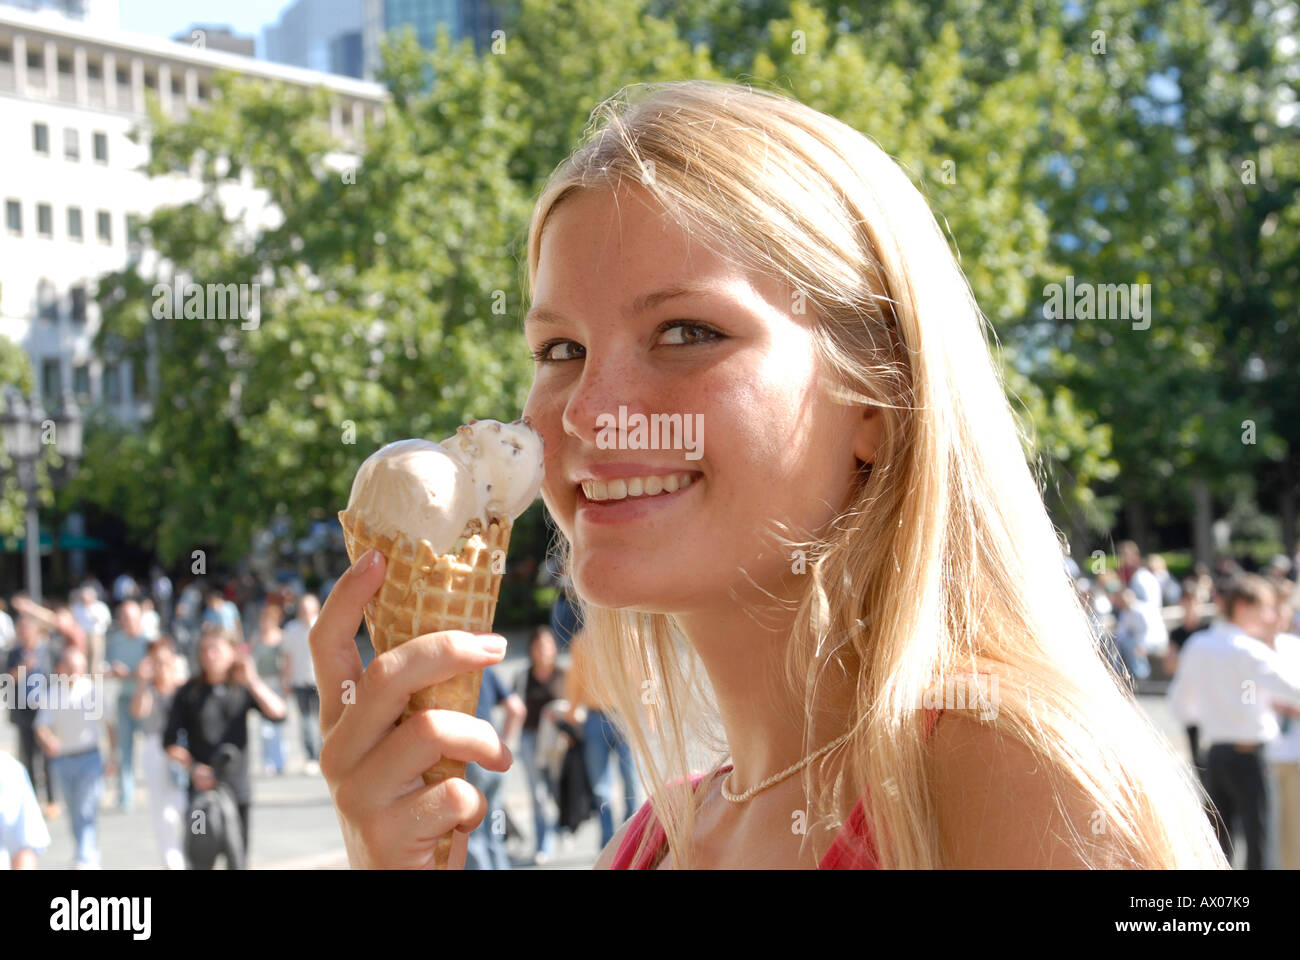 Blond City Eiscreme schlecken lecken geniessen Kalorien Frau Haare junge lange Sommer sommerlich Stadt Teenager Stock Photo